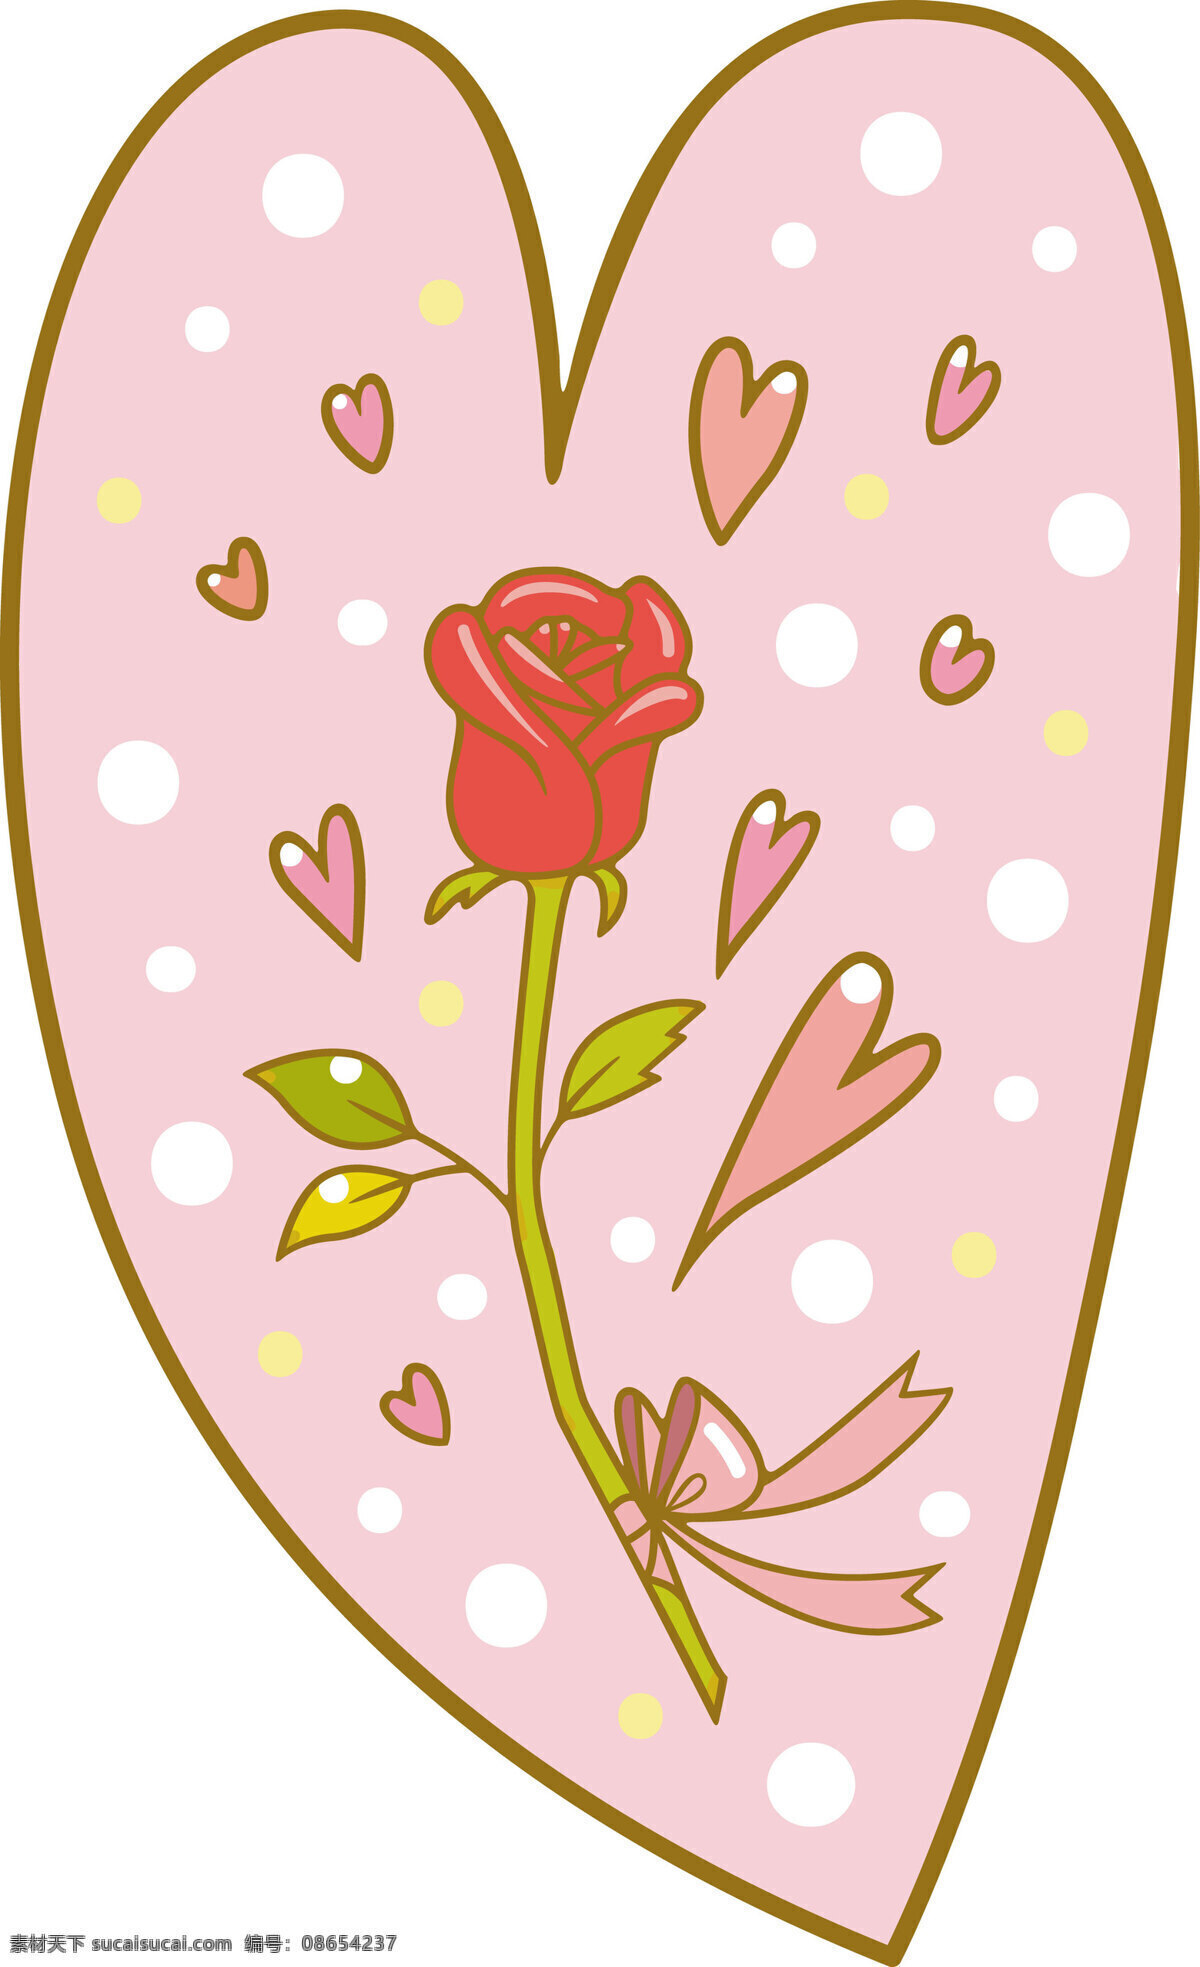 爱情 爱心 爱心玫瑰 动漫动画 卡通 浪漫 漫画 玫瑰 设计素材 模板下载 情人节 节日素材 情人节七夕